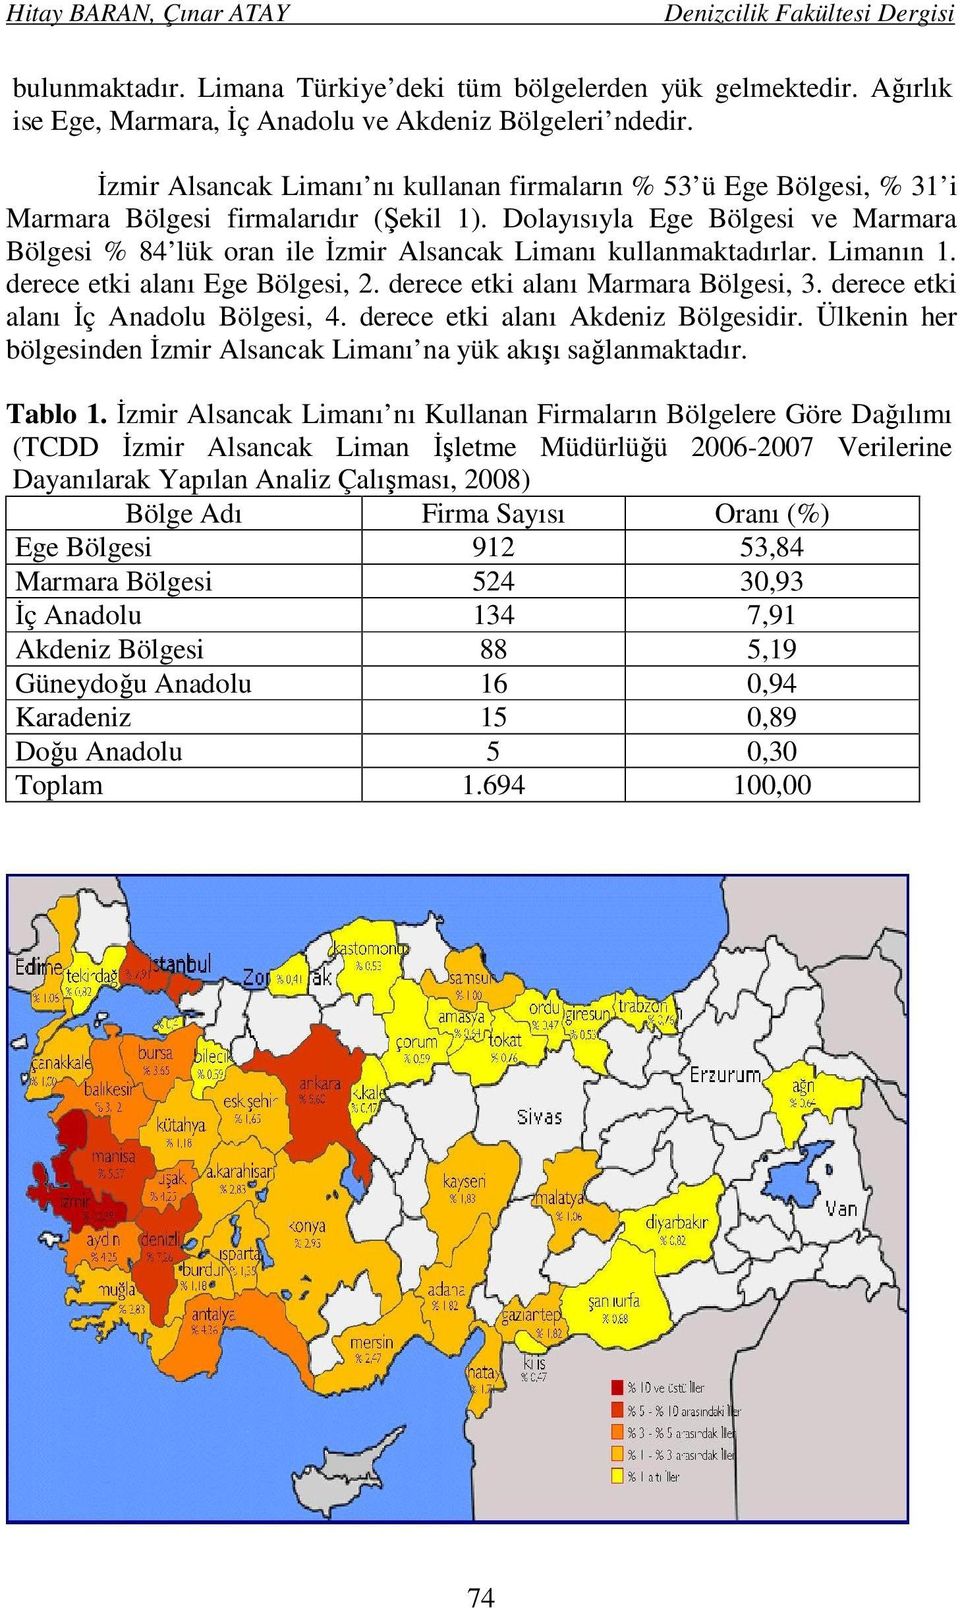 Dolayısıyla Ege Bölgesi ve Marmara Bölgesi % 84 lük oran ile İzmir Alsancak Limanı kullanmaktadırlar. Limanın 1. derece etki alanı Ege Bölgesi, 2. derece etki alanı Marmara Bölgesi, 3.